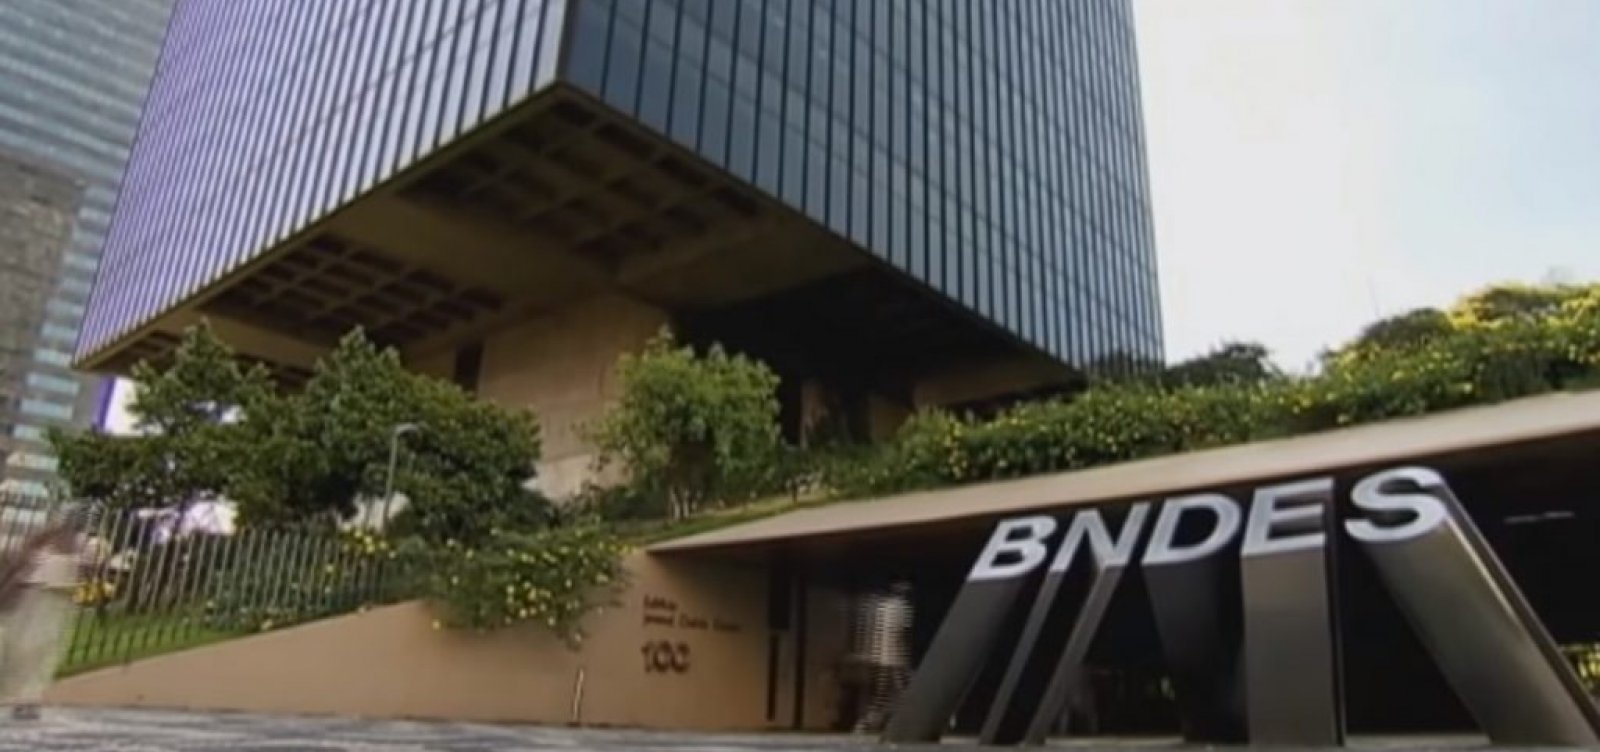 [BNDES faz auditoria interna por R$ 48 milhões, mas não encontra irregularidades]